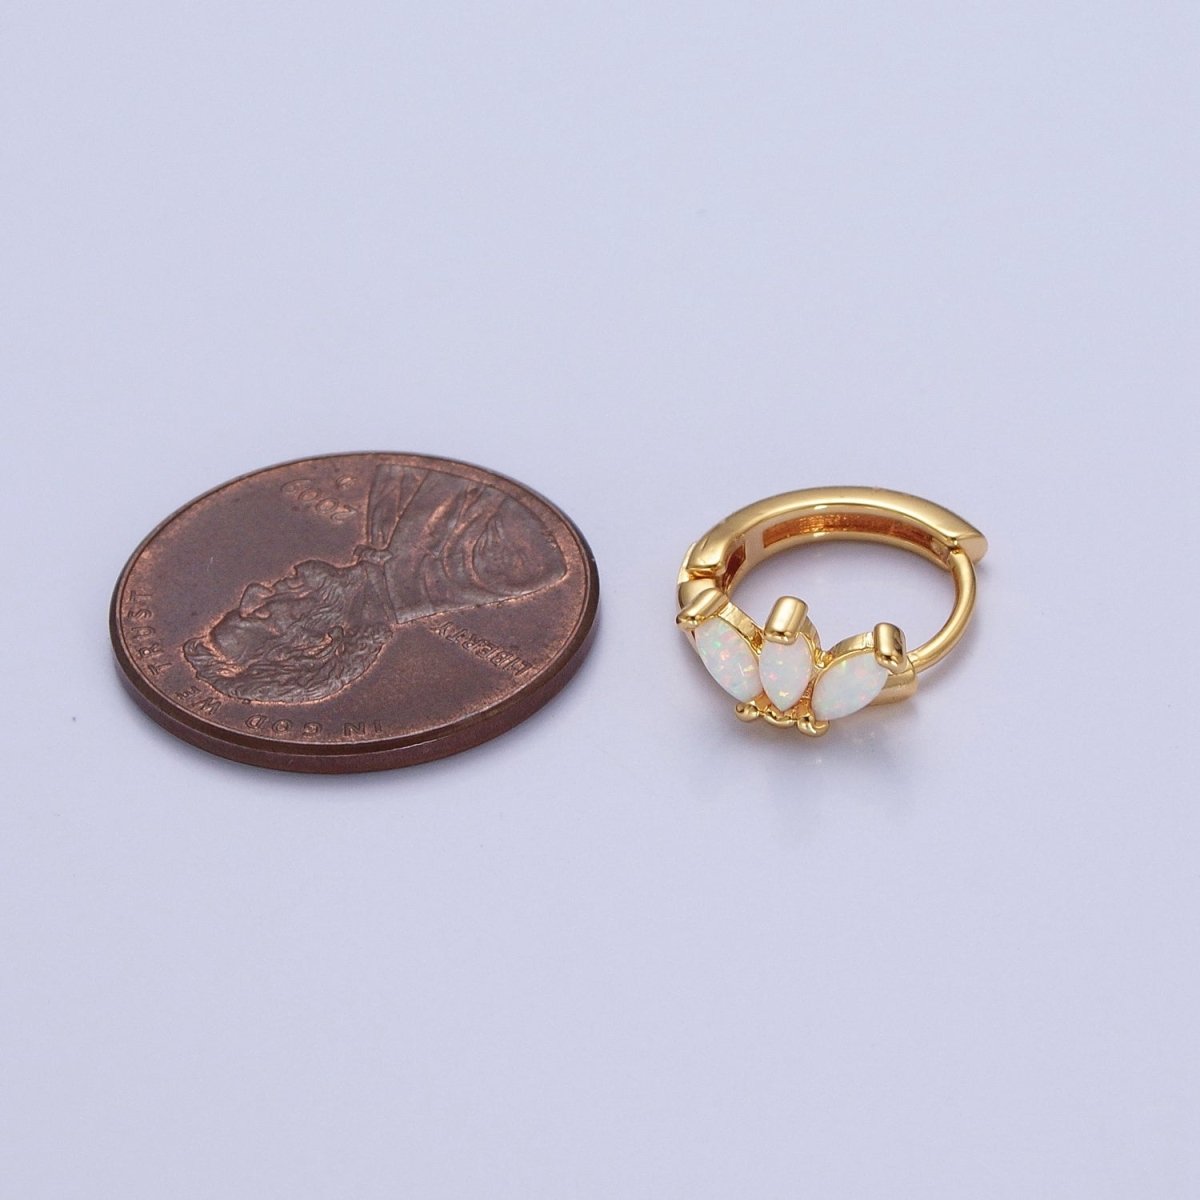 OS 14K Gold Filled White Opal Triple Marquise Huggie Hoop Earrings | Y-092 - DLUXCA